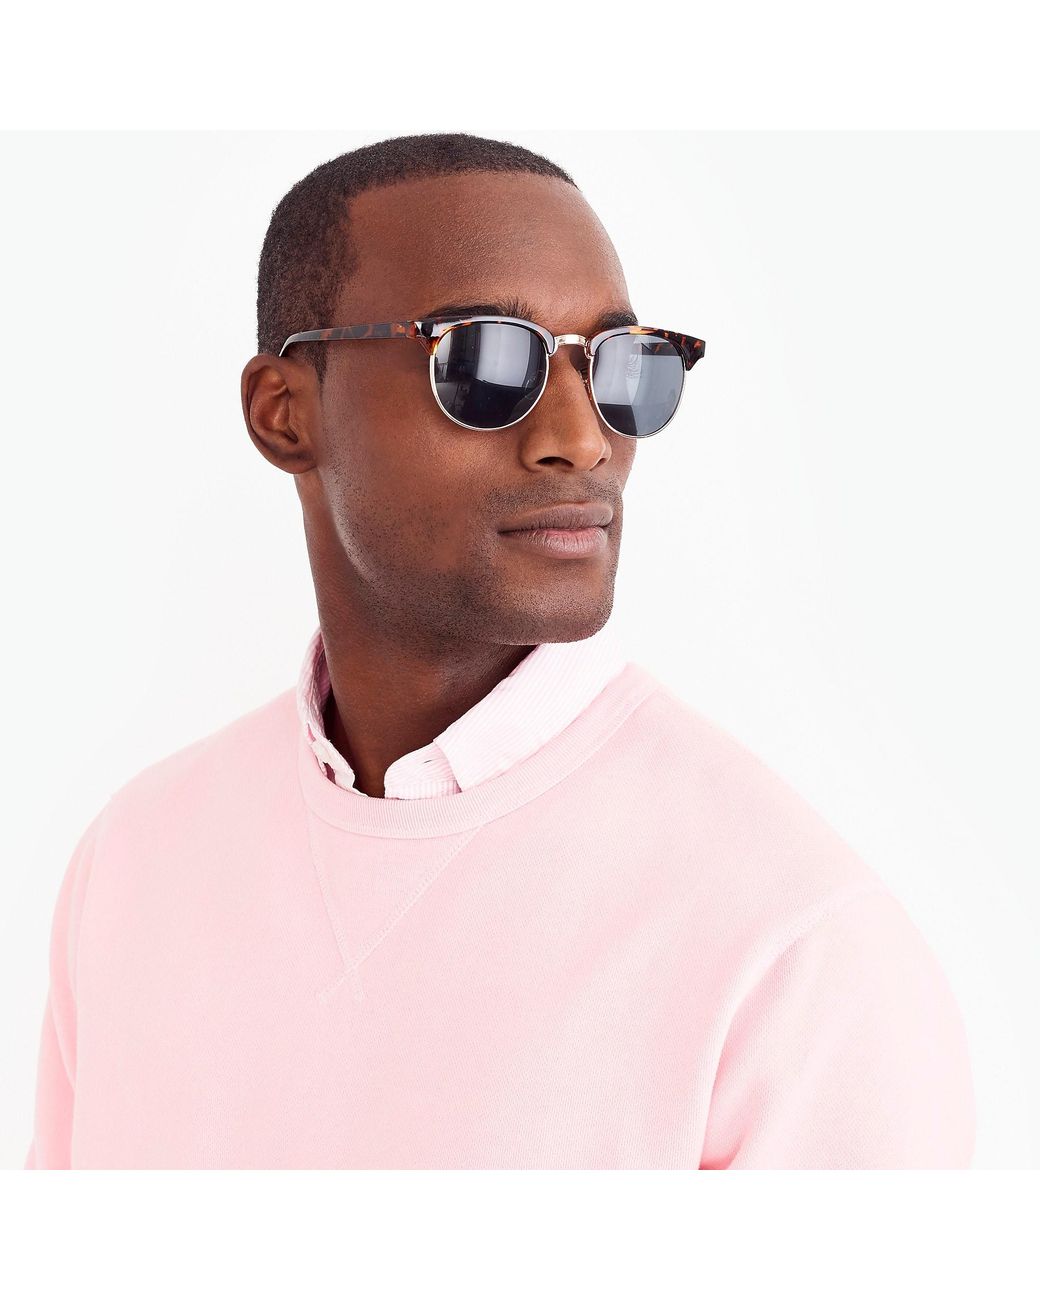 J.Crew Men's Sunglasses | ShopStyle